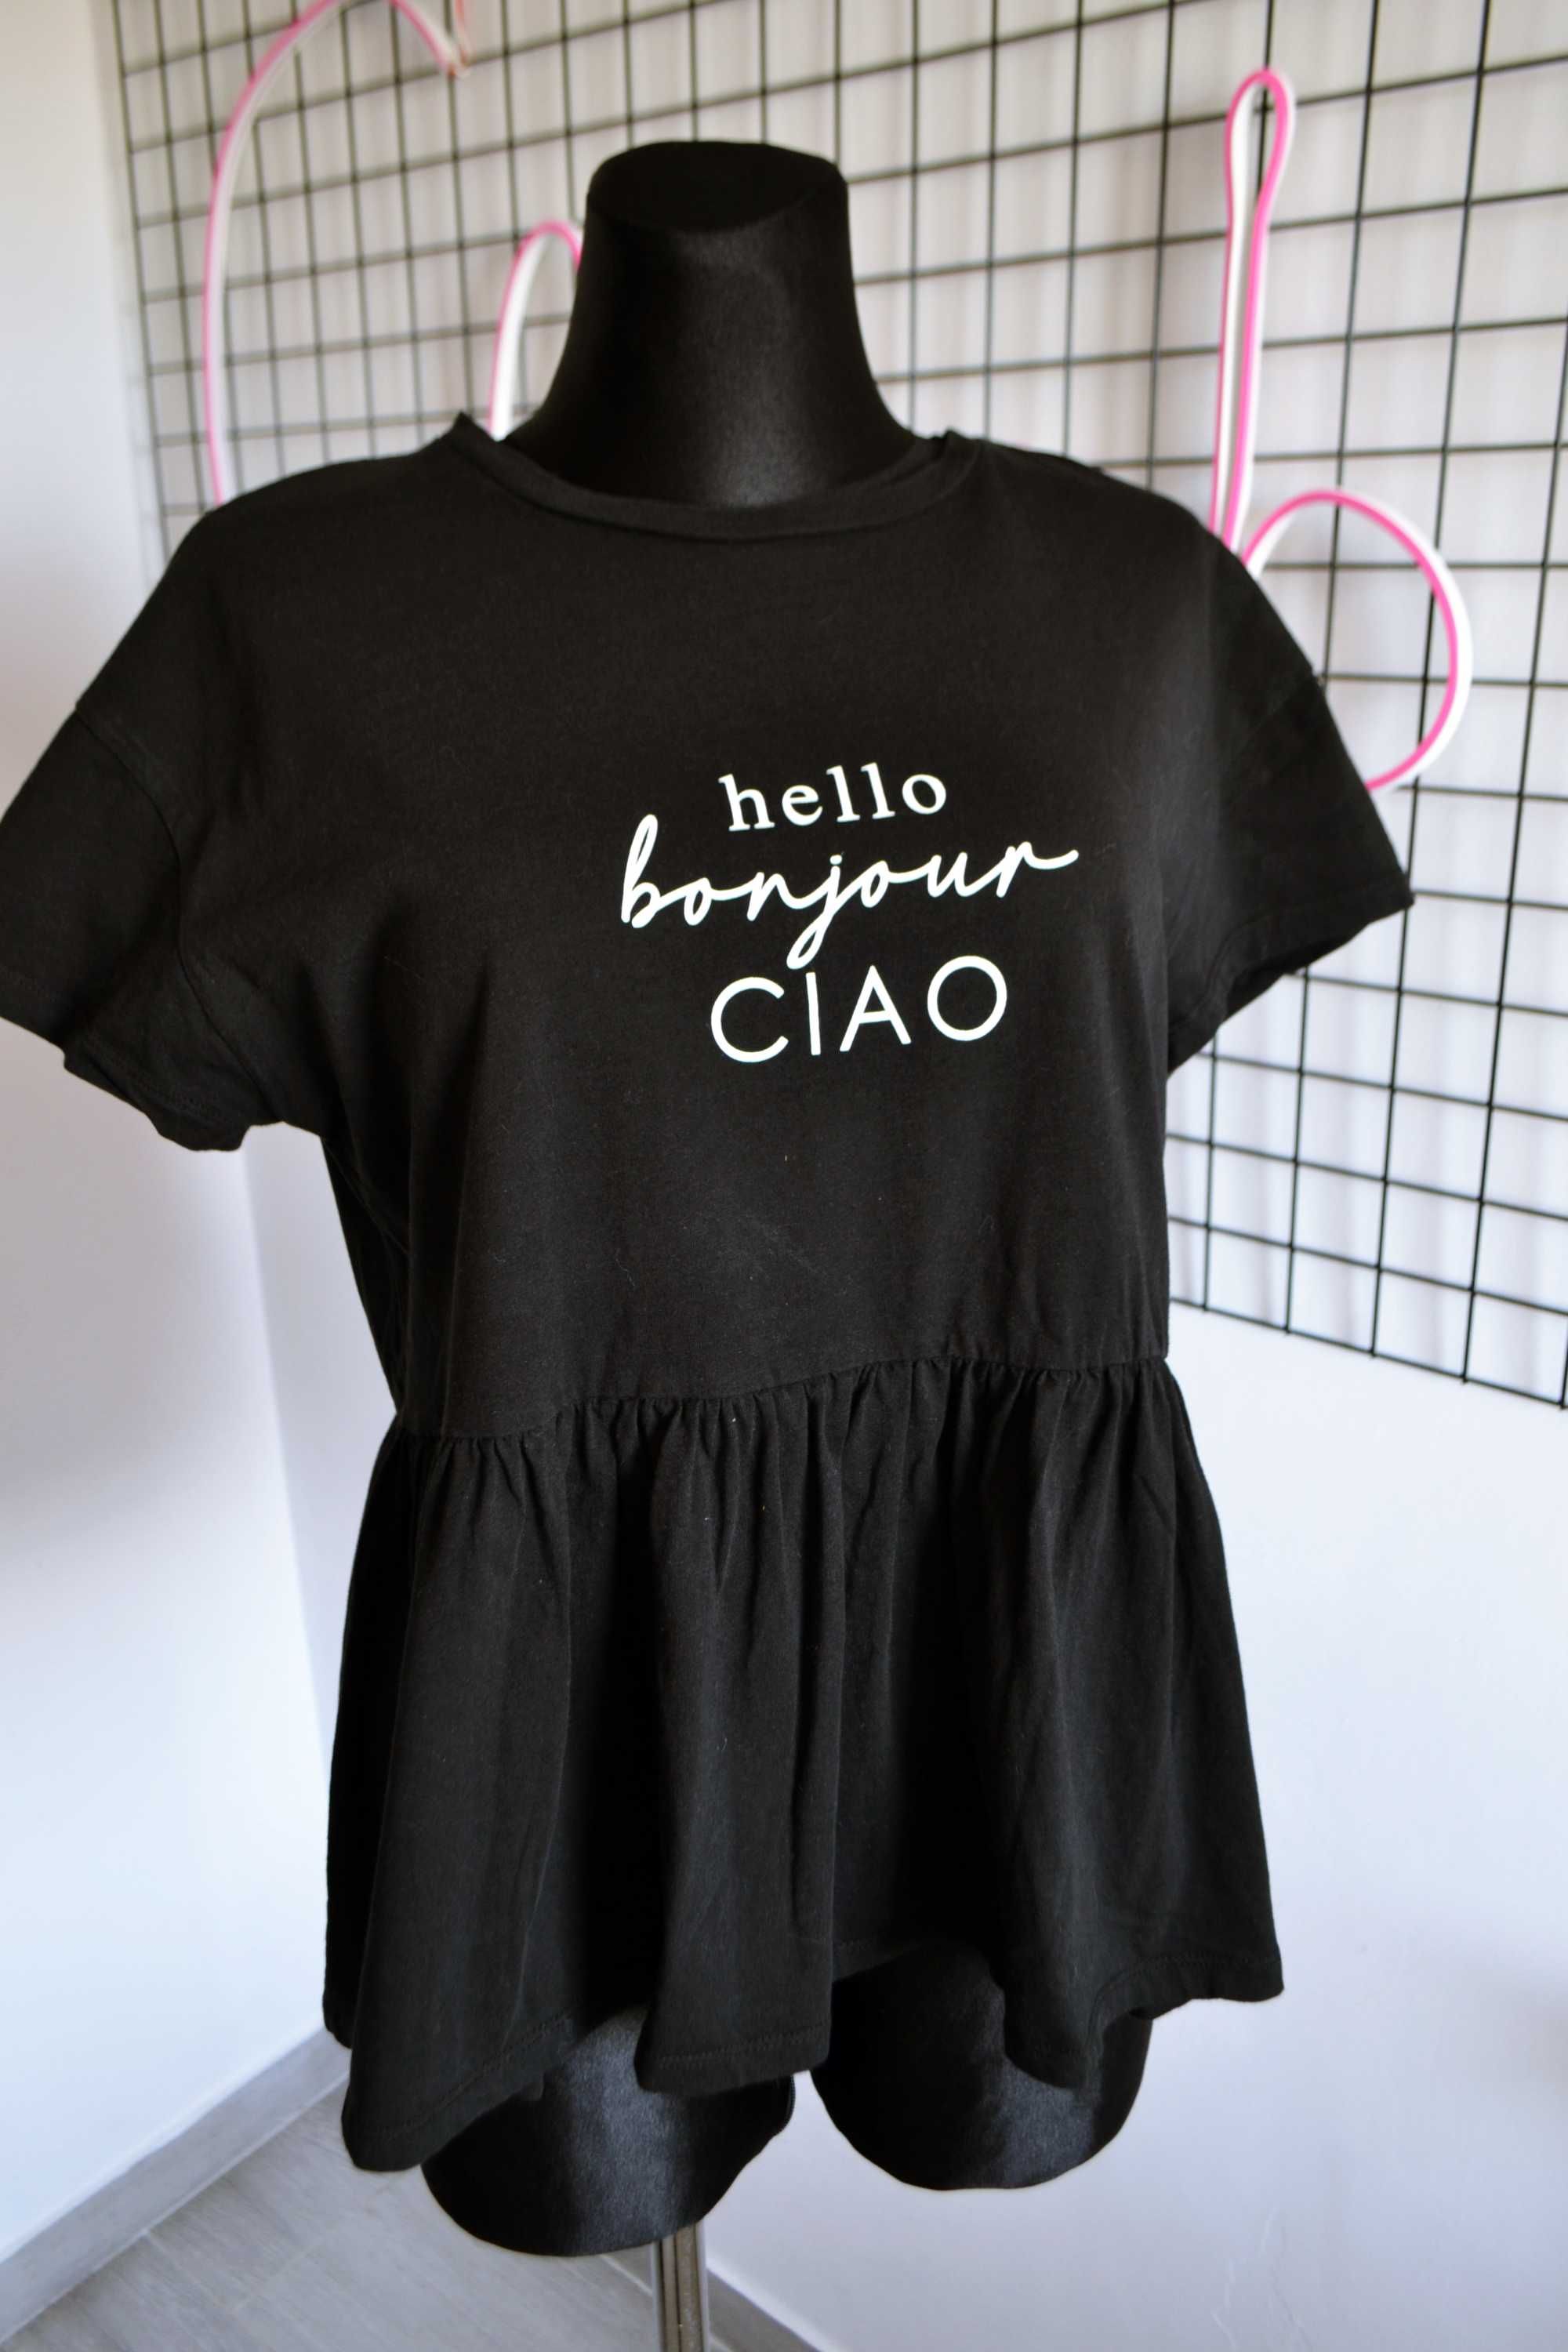 Czarna bluzka z baskinką bawełniana tshirt koszulka ciao bonjour